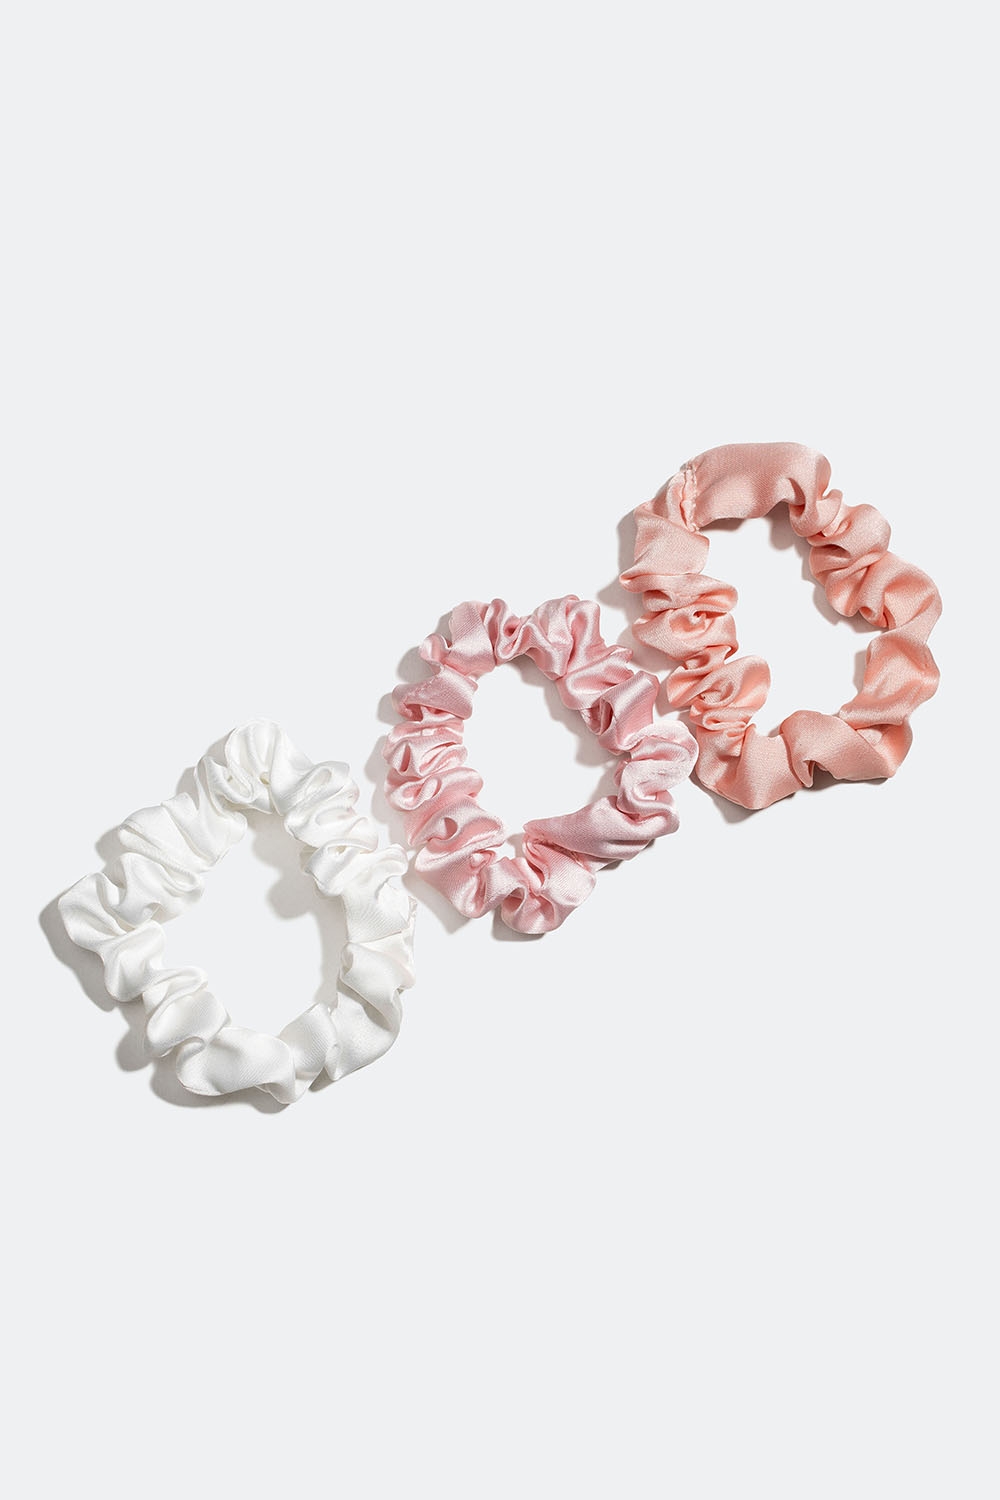 Rosa och vit mix av glansiga scrunchies, 3-pack i gruppen Håraccessoarer / Scrunchies / Flerpack hos Glitter (332000675400)